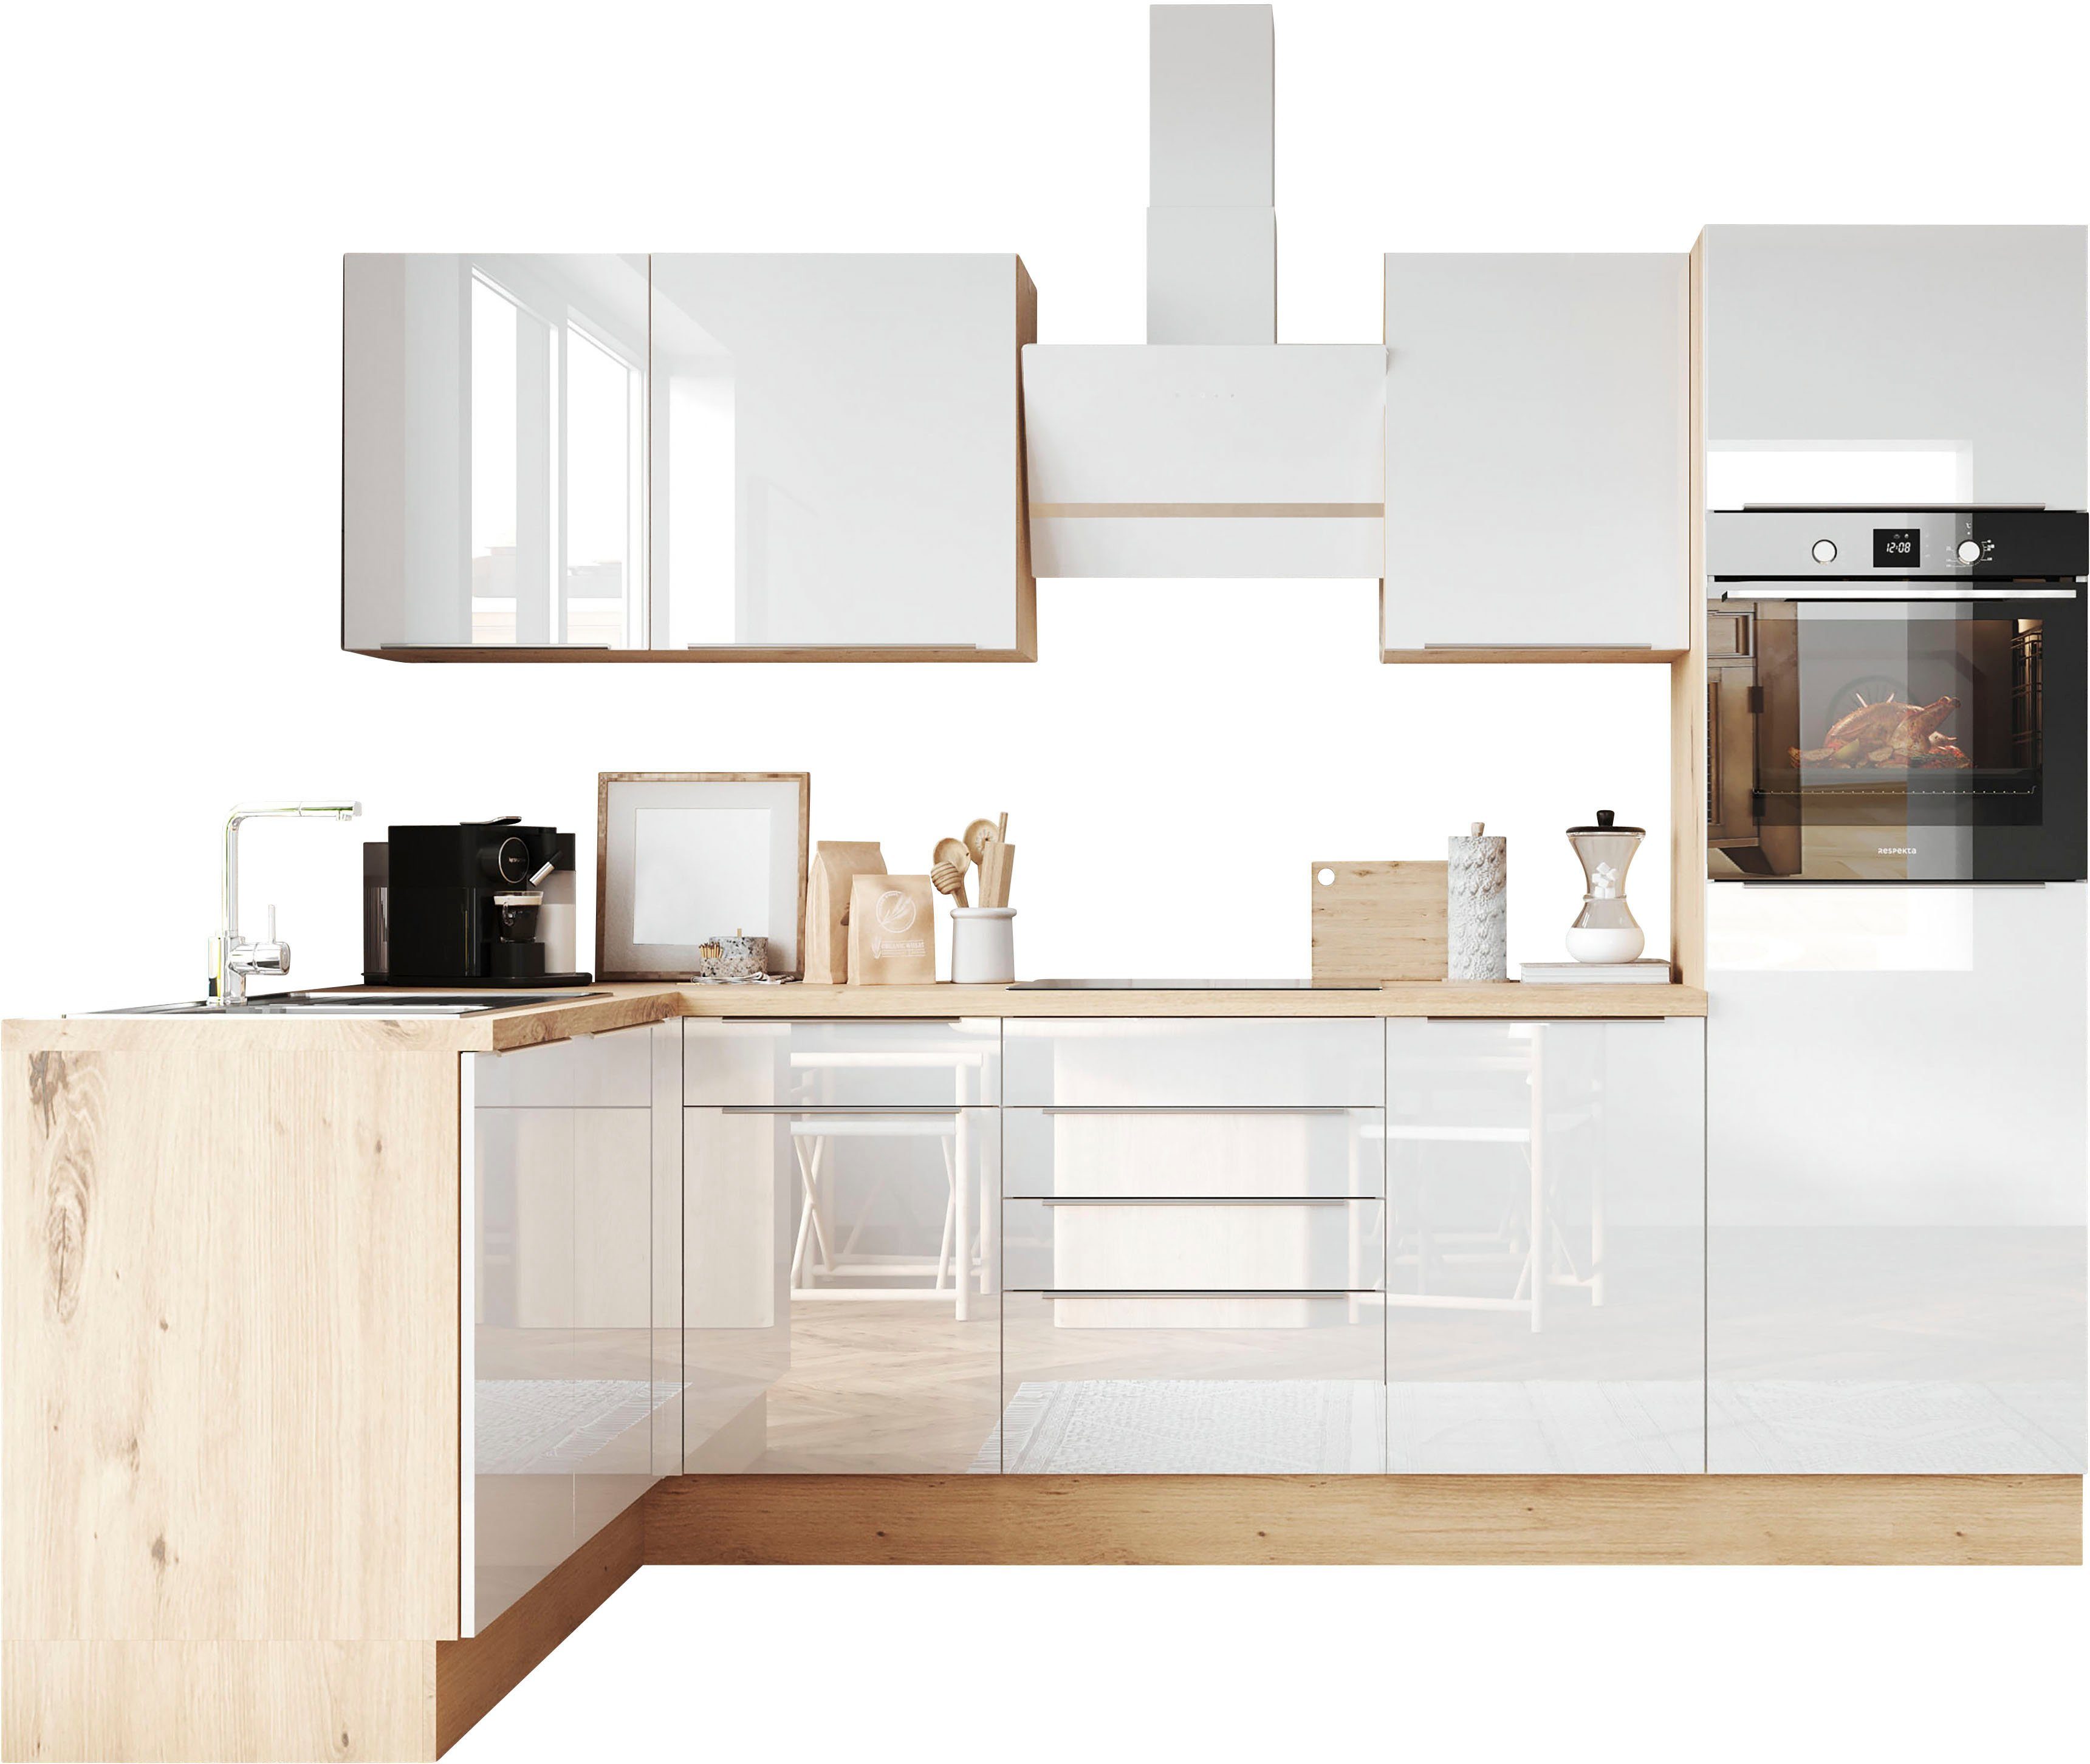 RESPEKTA Winkelküche Safado aus der Serie Marleen, Breite 280 cm, hochwertige Ausstattung wie Soft Close Funktion Weiß Hochglanz / Artisan Eiche